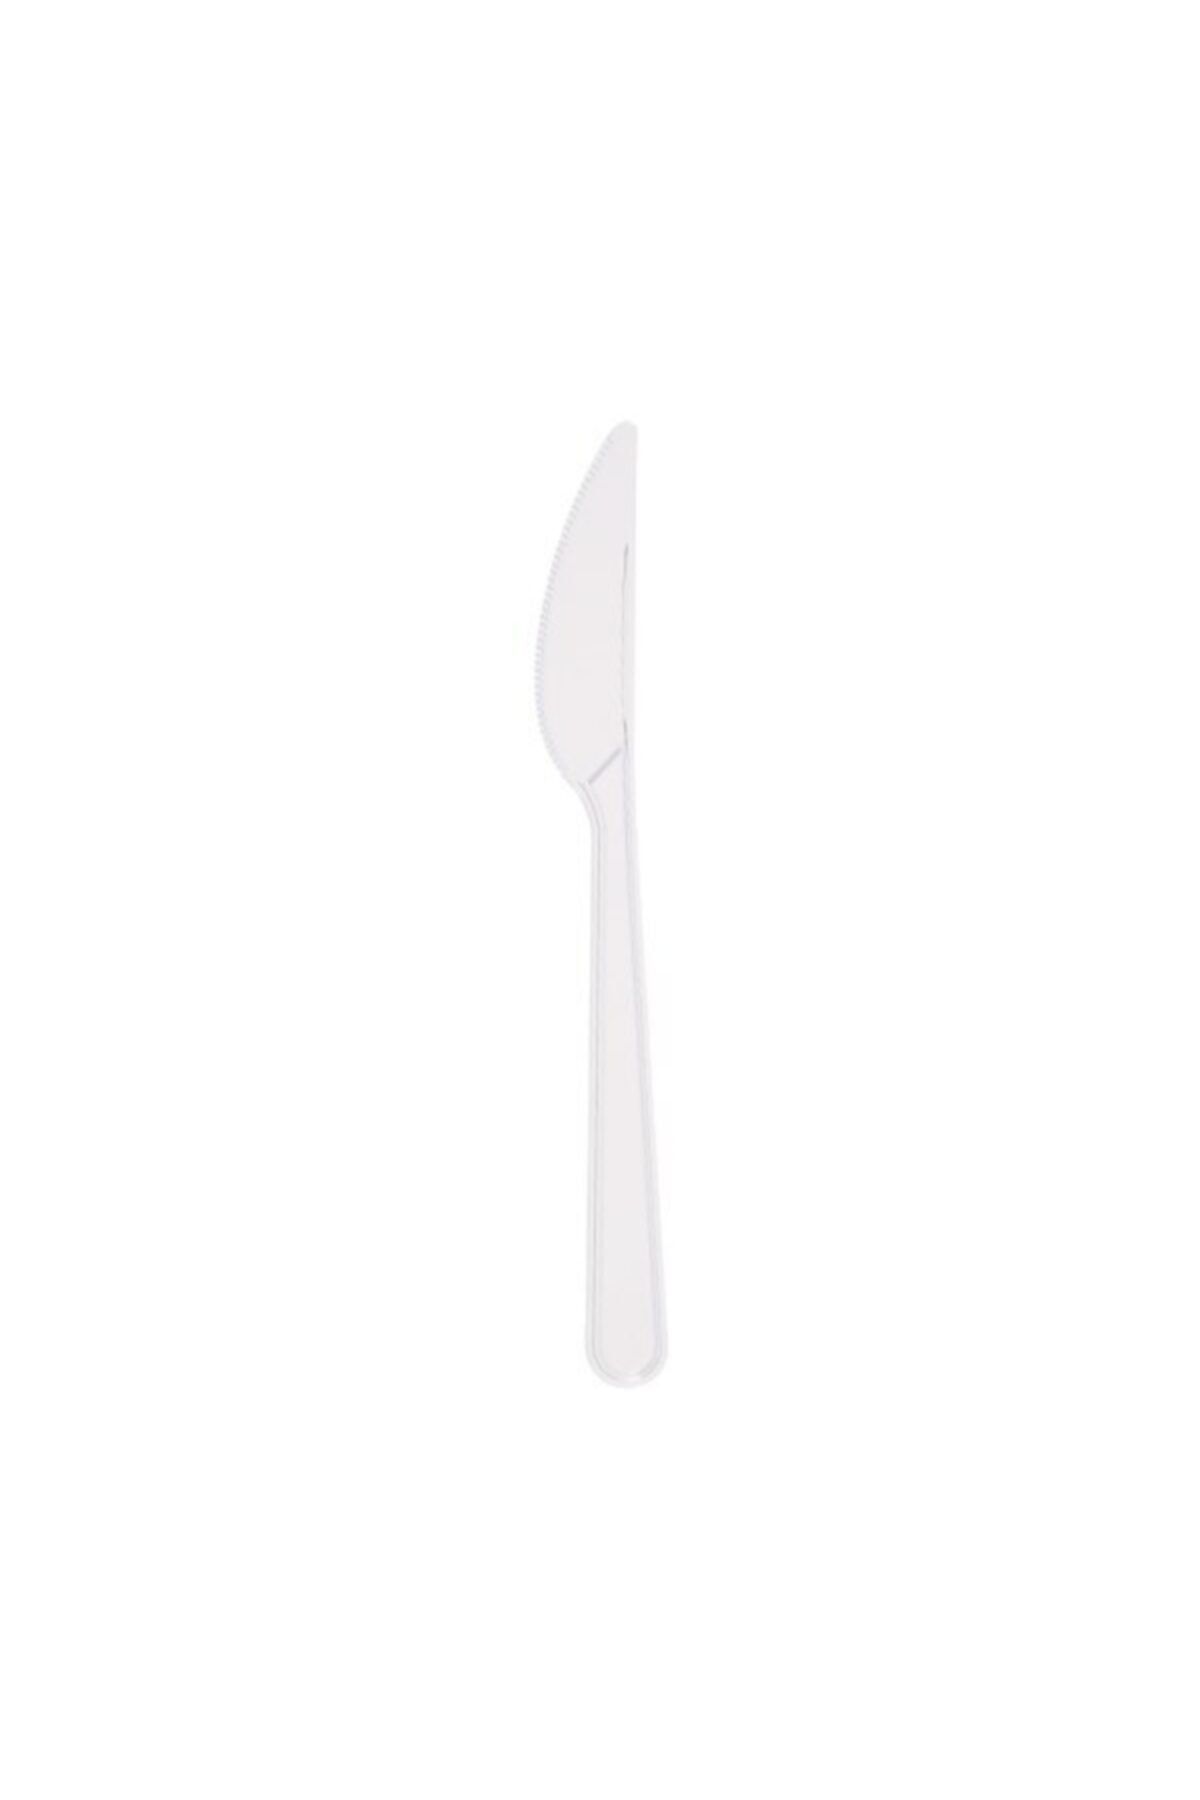 Poppy Beyaz Plastik Bıçak  50 Adet